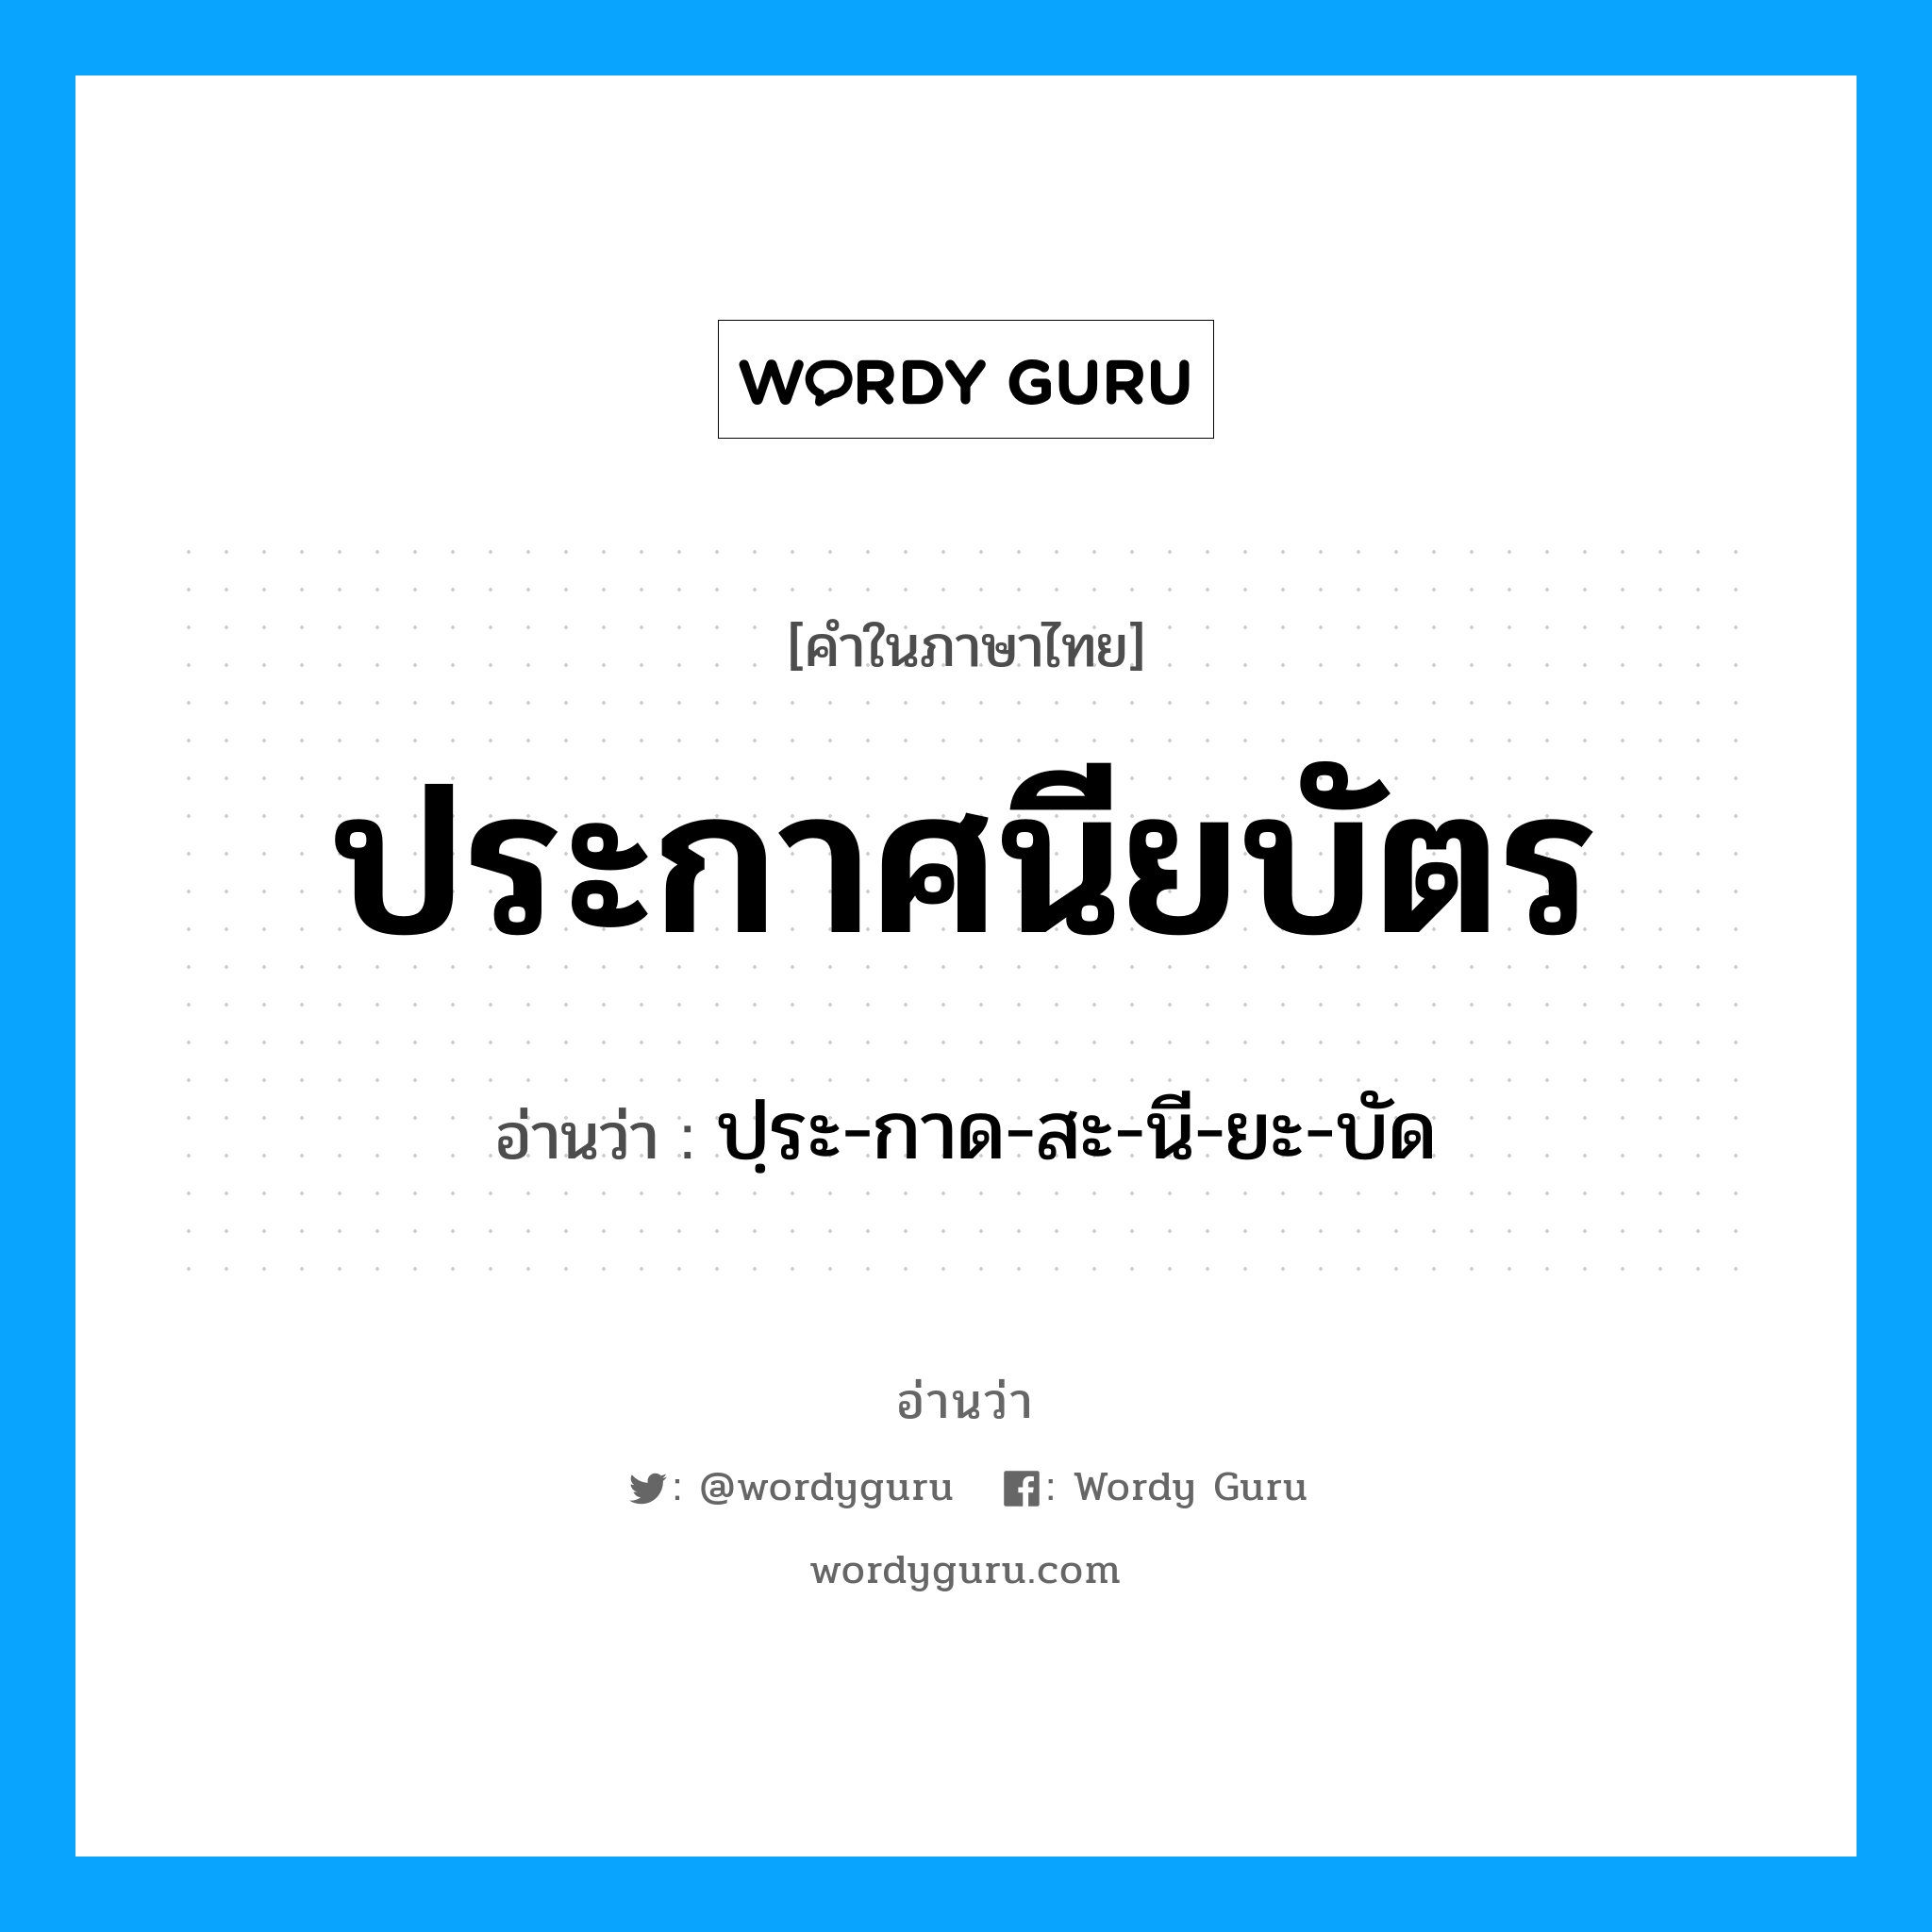 ปฺระ-กาด-สะ-นี-ยะ-บัด เป็นคำอ่านของคำไหน?, คำในภาษาไทย ปฺระ-กาด-สะ-นี-ยะ-บัด อ่านว่า ประกาศนียบัตร